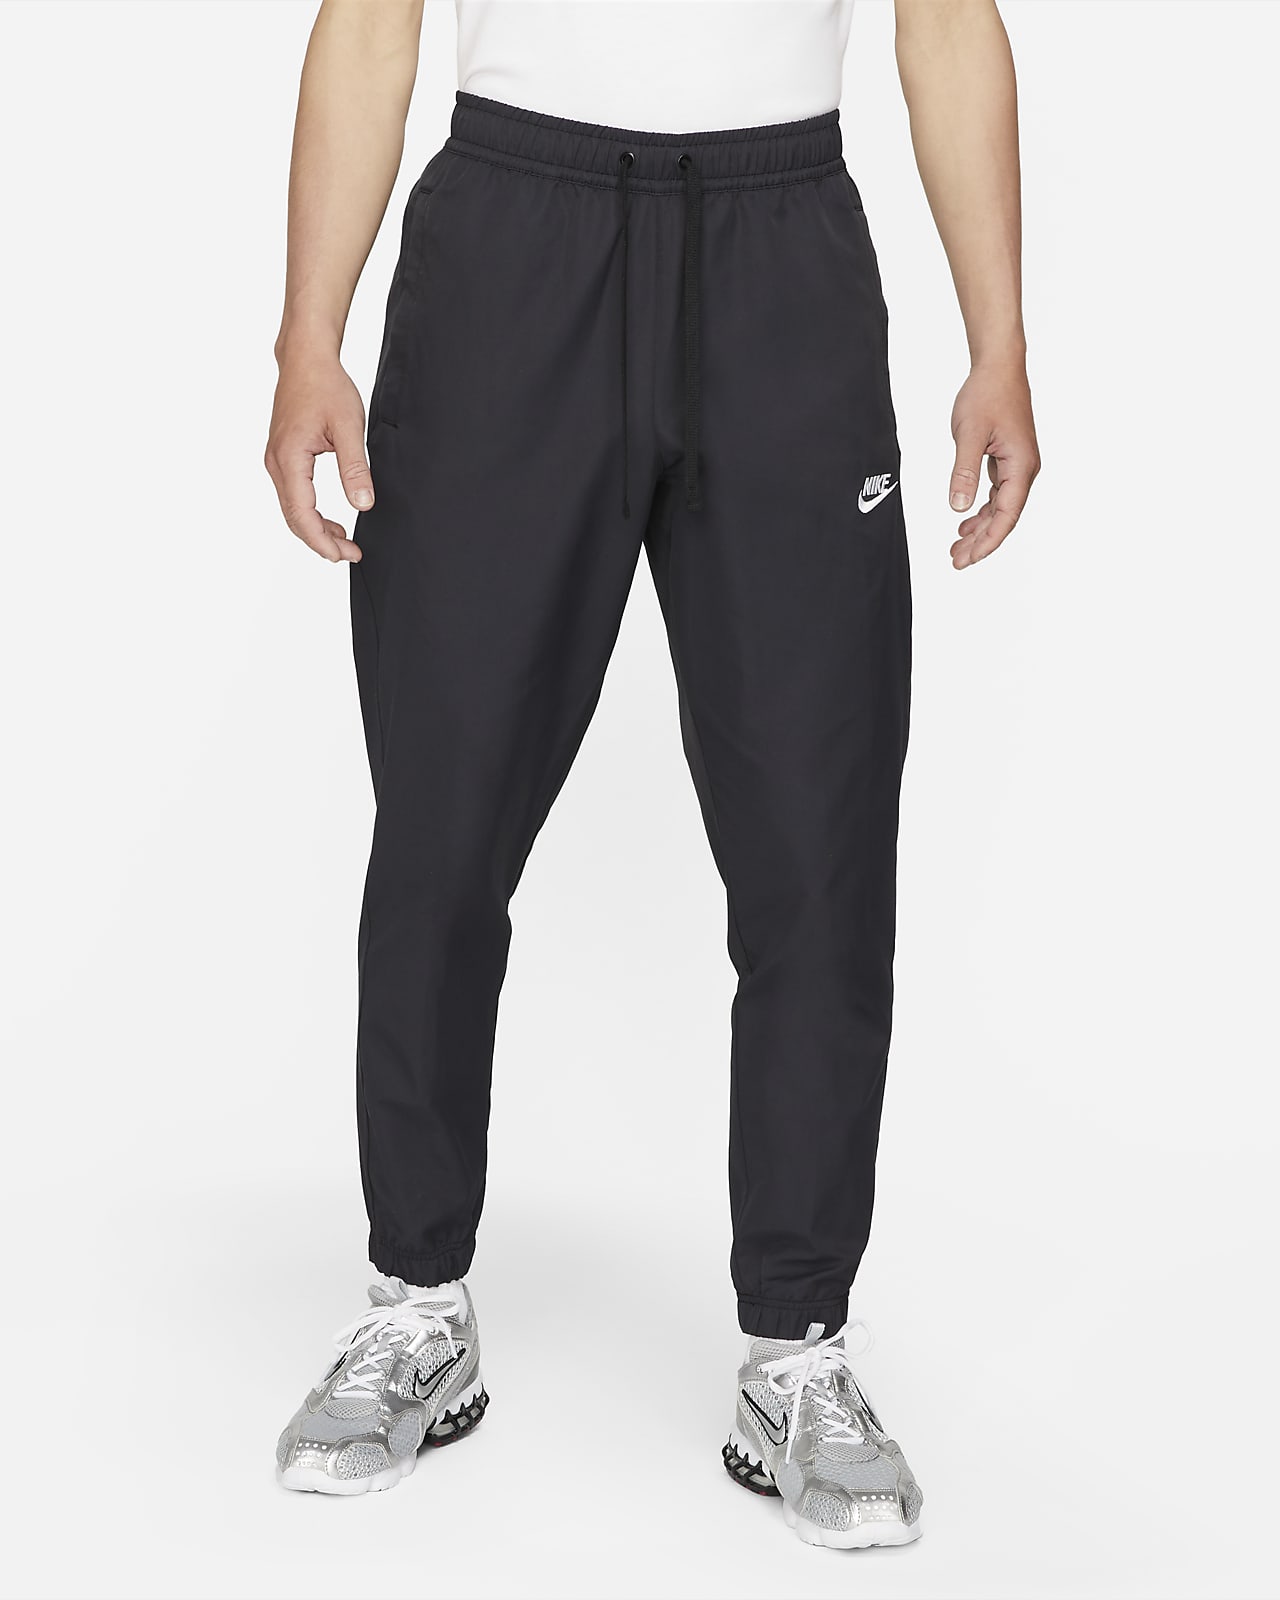 Nike Sportswear Men's Unlined Cuff Trousers